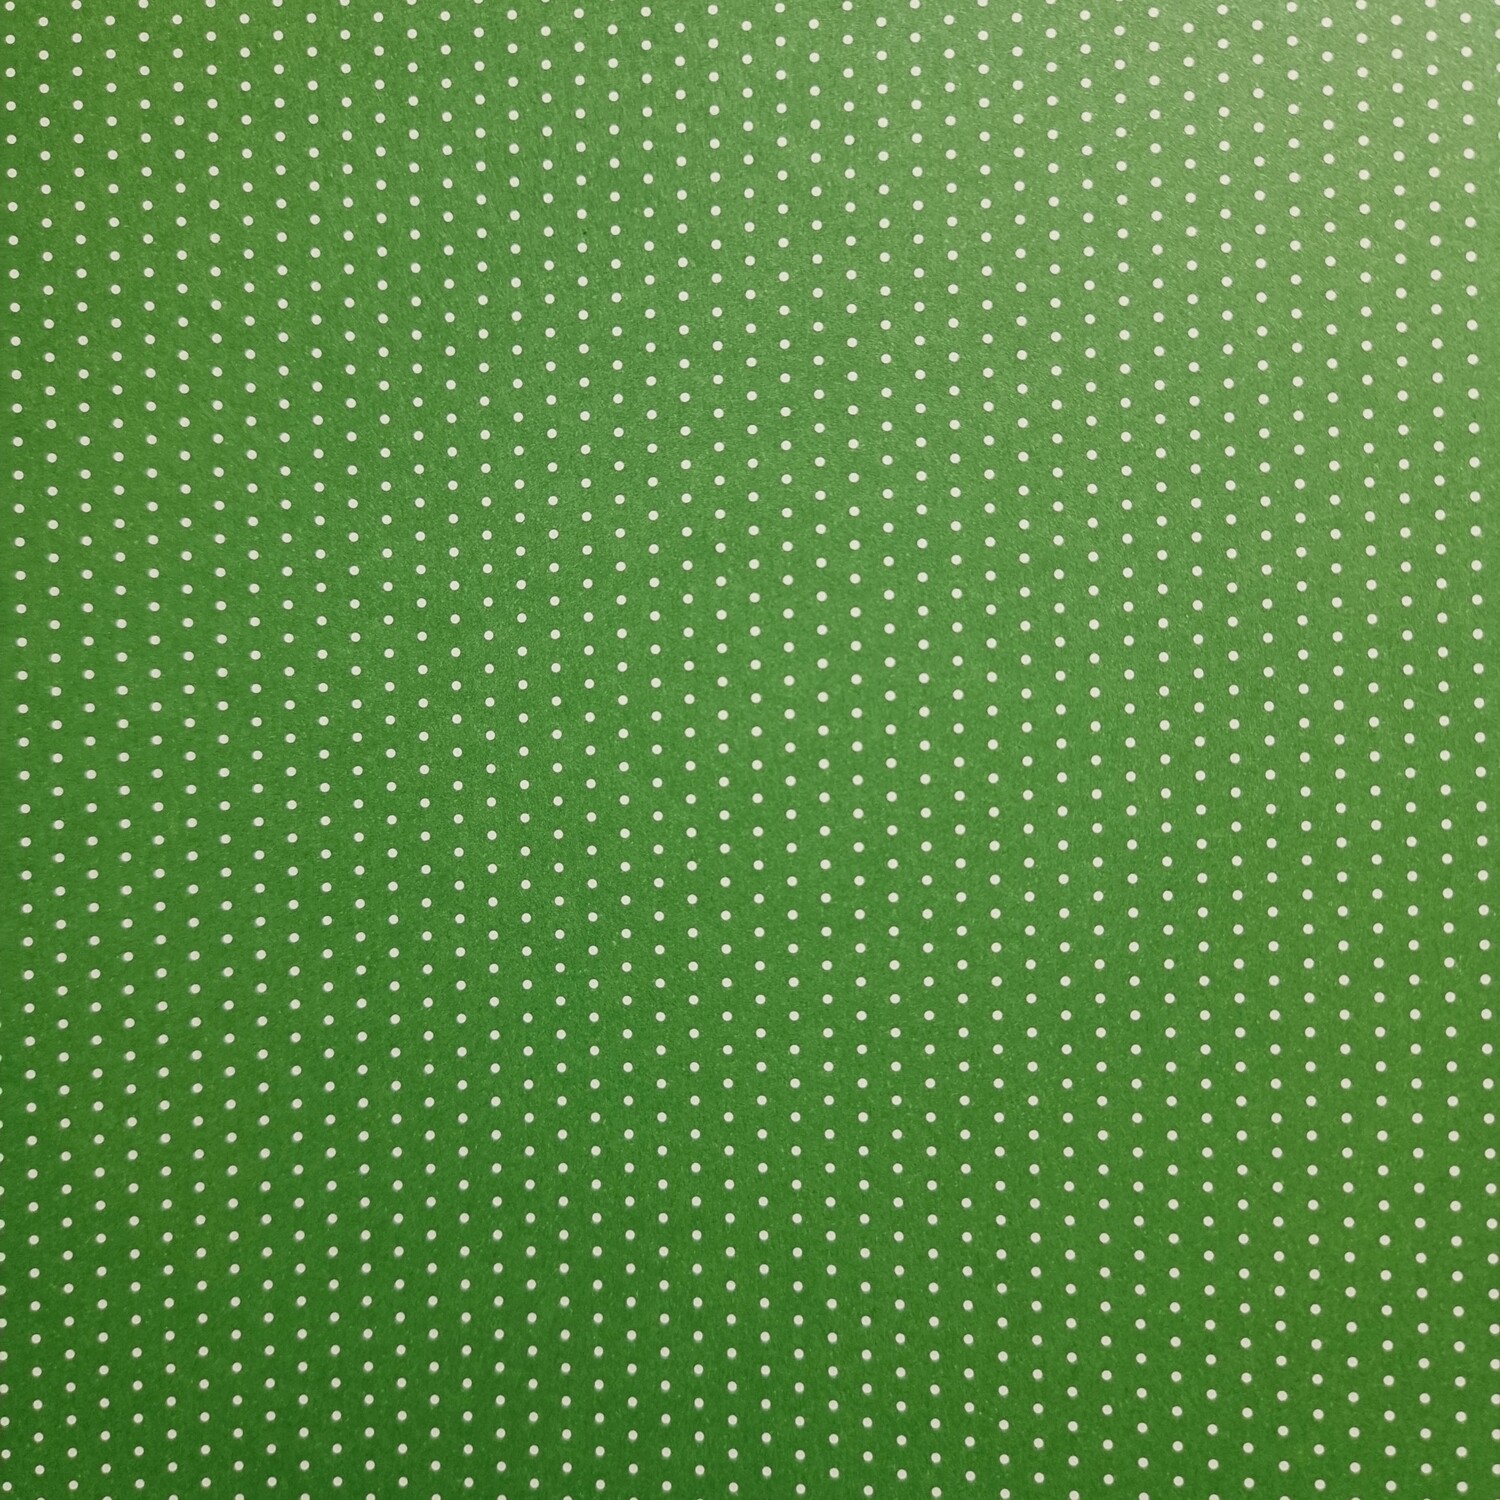 Motivpapier Mini Punkte grün mit weißen Punkten